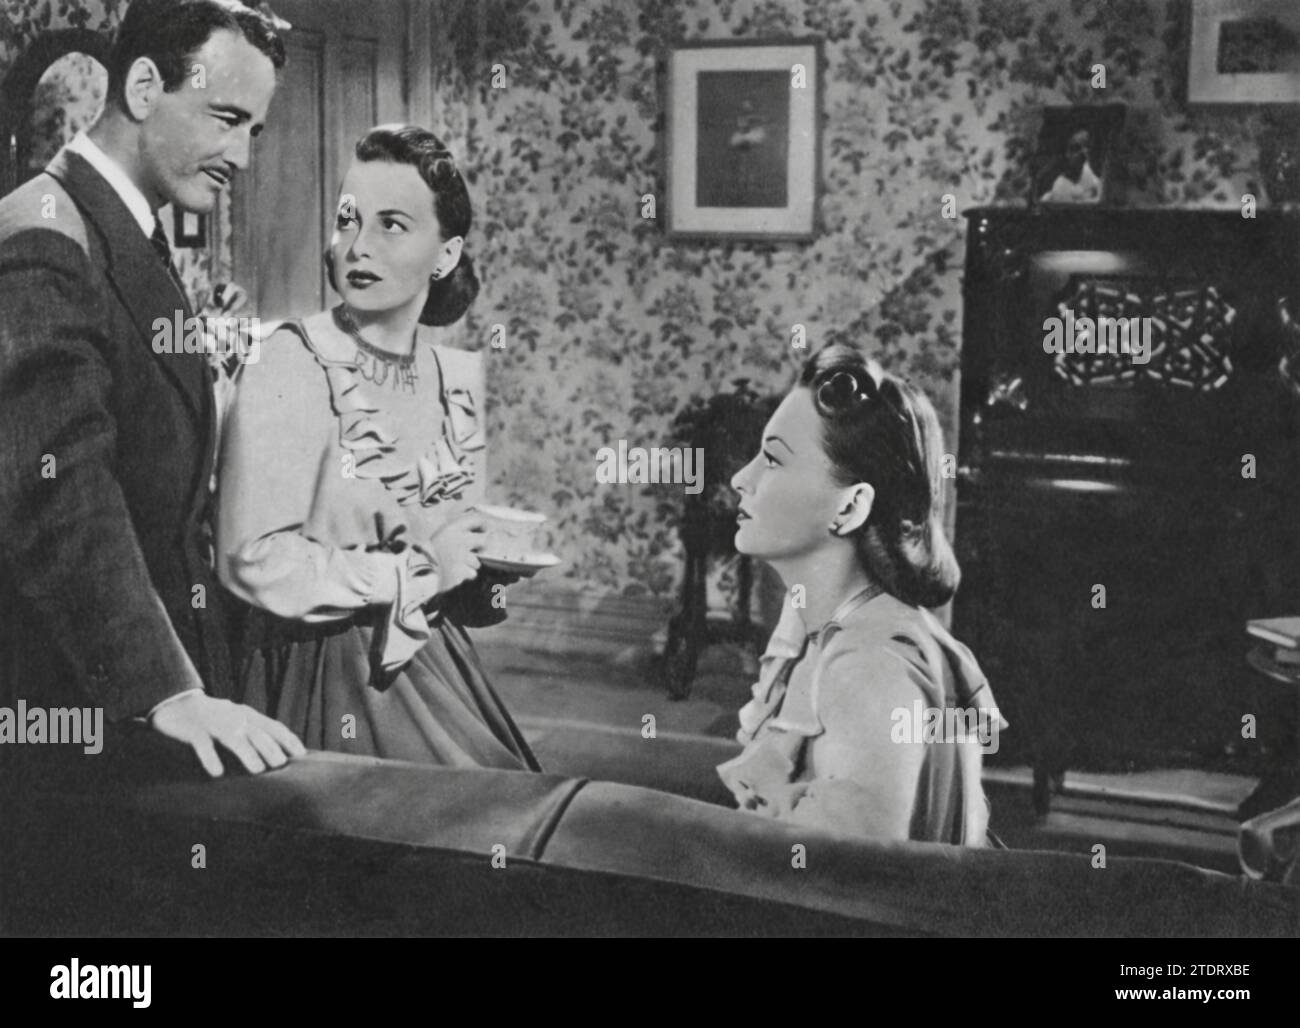 Olivia de Havilland interpreta un duplice ruolo impegnativo in "The Dark Mirror" (1946), insieme a Lew Ayres. In questo thriller psicologico, de Havilland ritrae sorelle gemelle, una delle quali è sospettata di omicidio. Ayres interpreta lo psichiatra che viene coinvolto nello svelare il mistero. Il film approfondisce i temi dell'identità e della complessità psicologica, con la performance di de Havilland che sottolinea la sua versatilità come attrice. Foto Stock